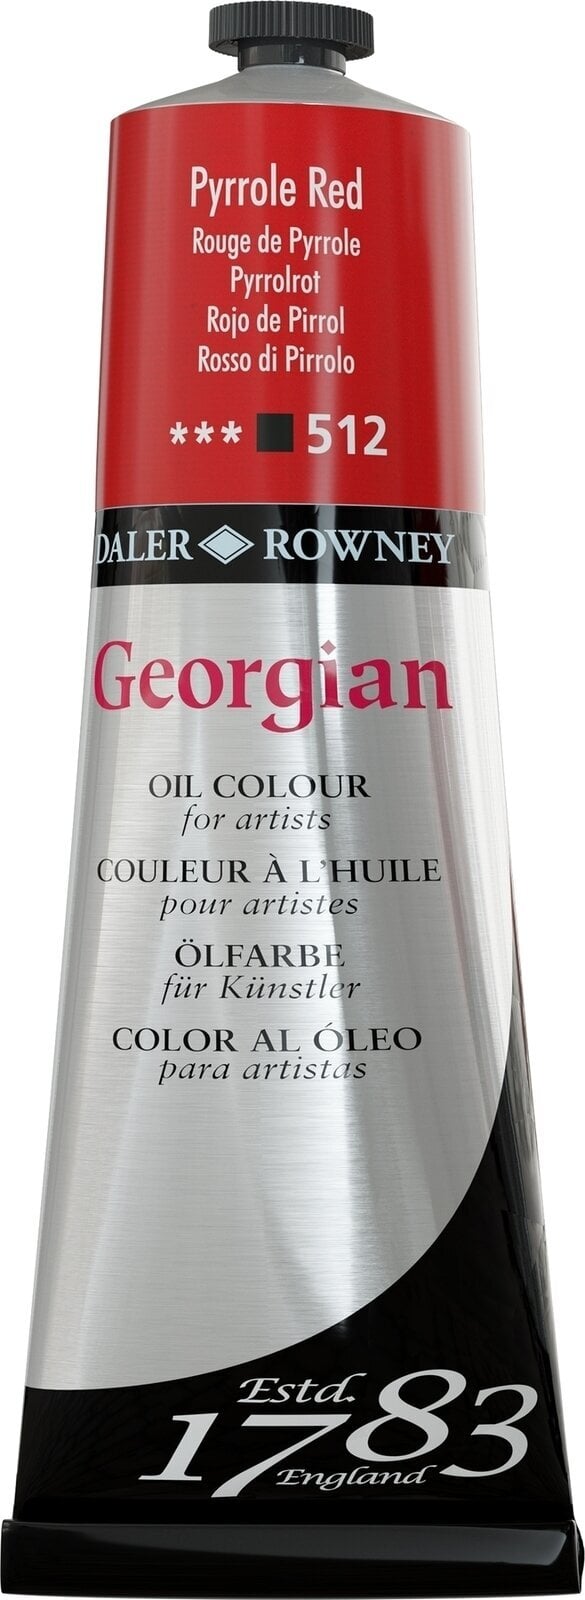 Χρώμα λαδιού Daler Rowney Georgian Λαδομπογιά Pyrrole Red 225 ml 1 τεμ.